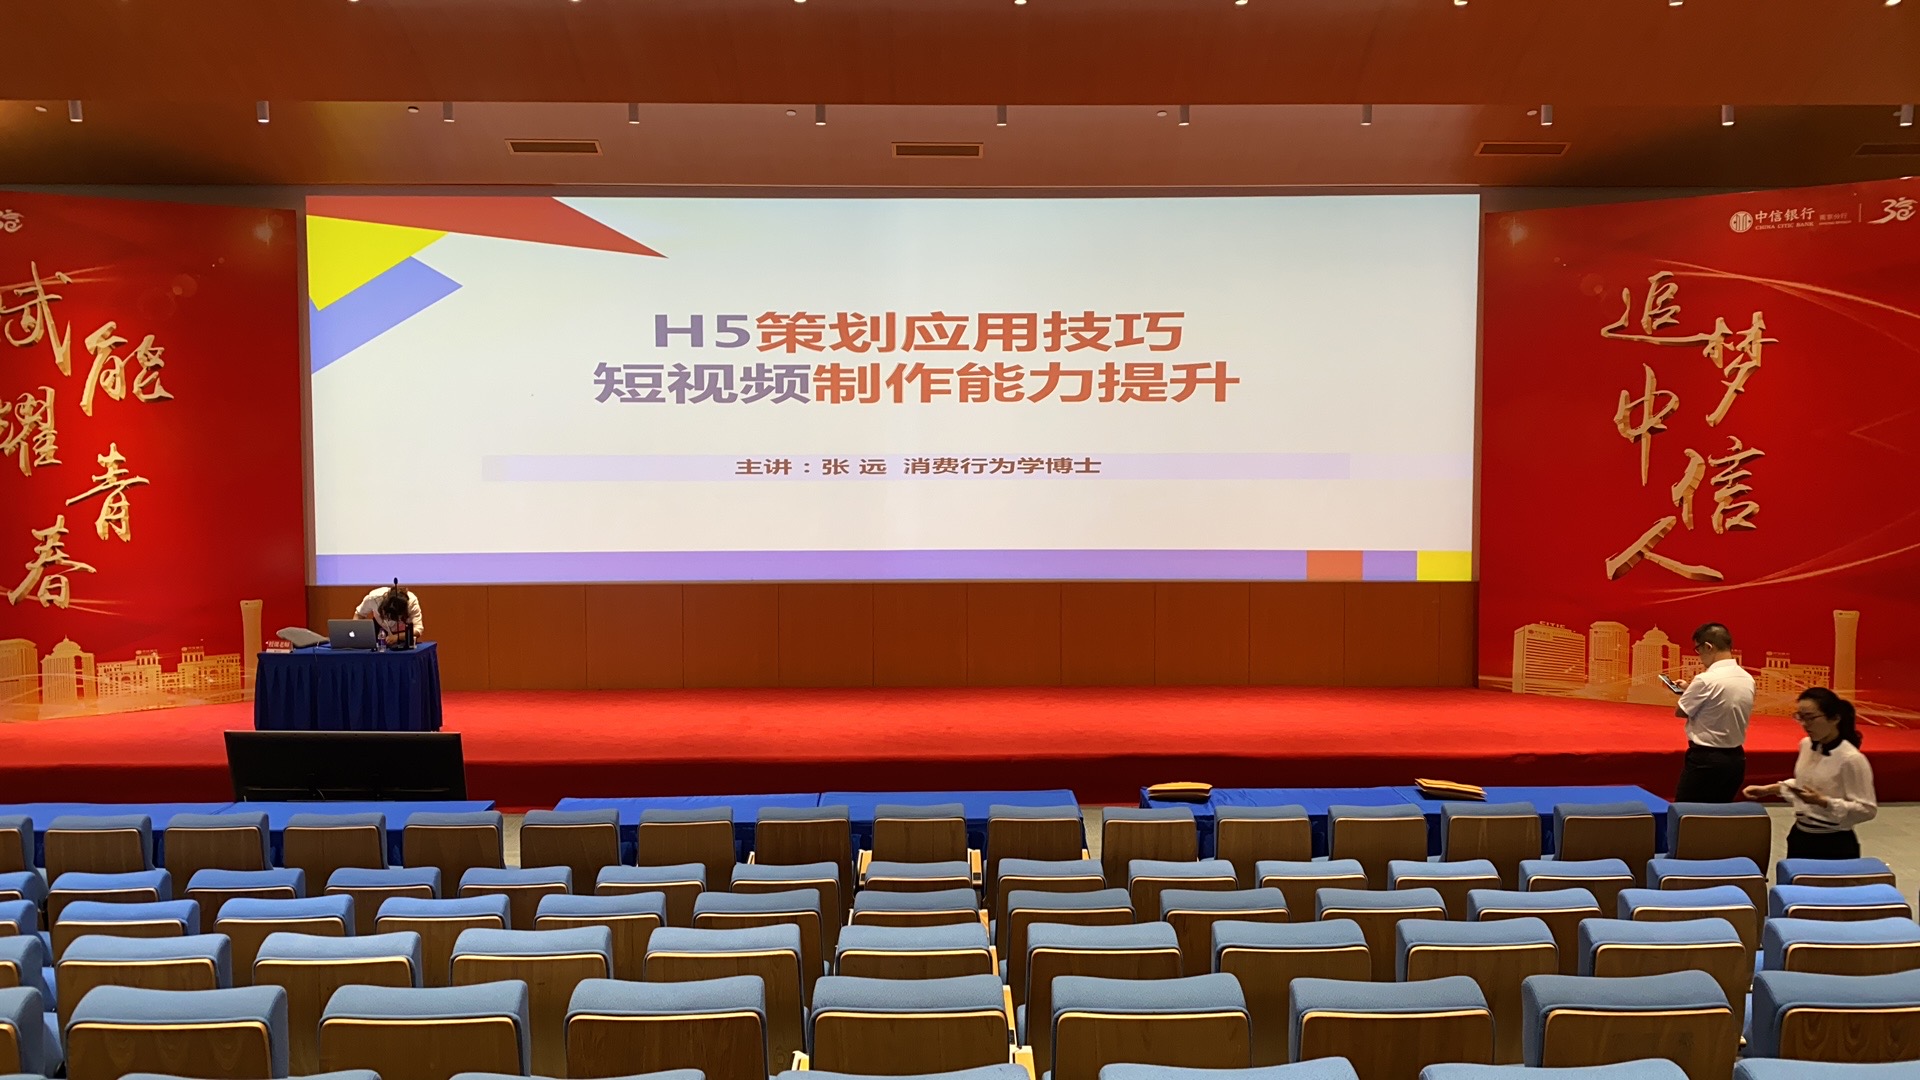 7月7日张远老师给南京中信银行带来的《H5策划应用技巧与短视频制作能力提升》圆满结束！